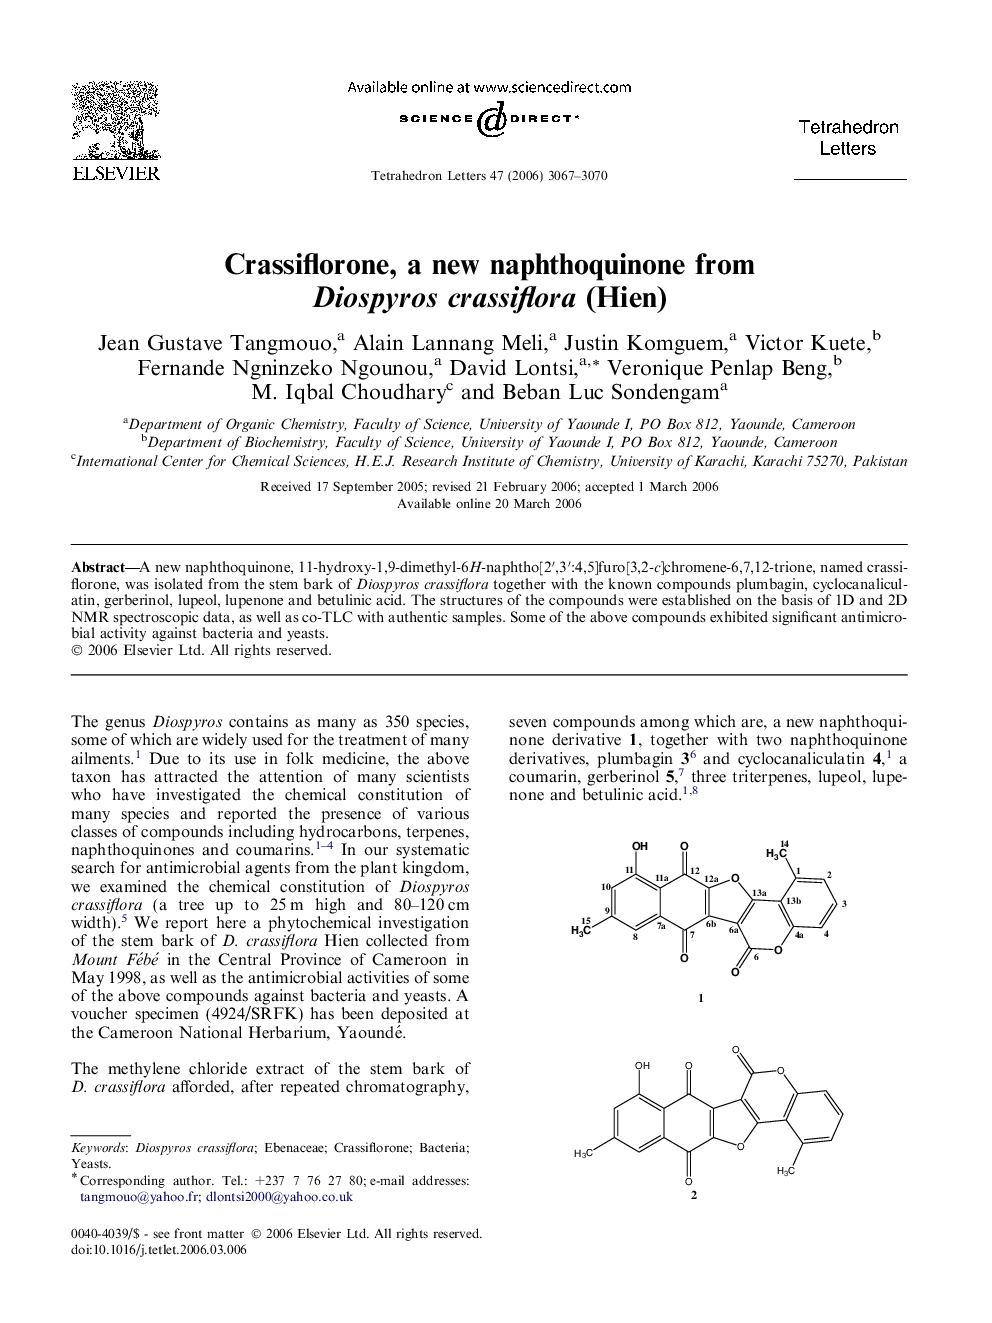 Crassiflorone, a new naphthoquinone from Diospyros crassiflora (Hien)